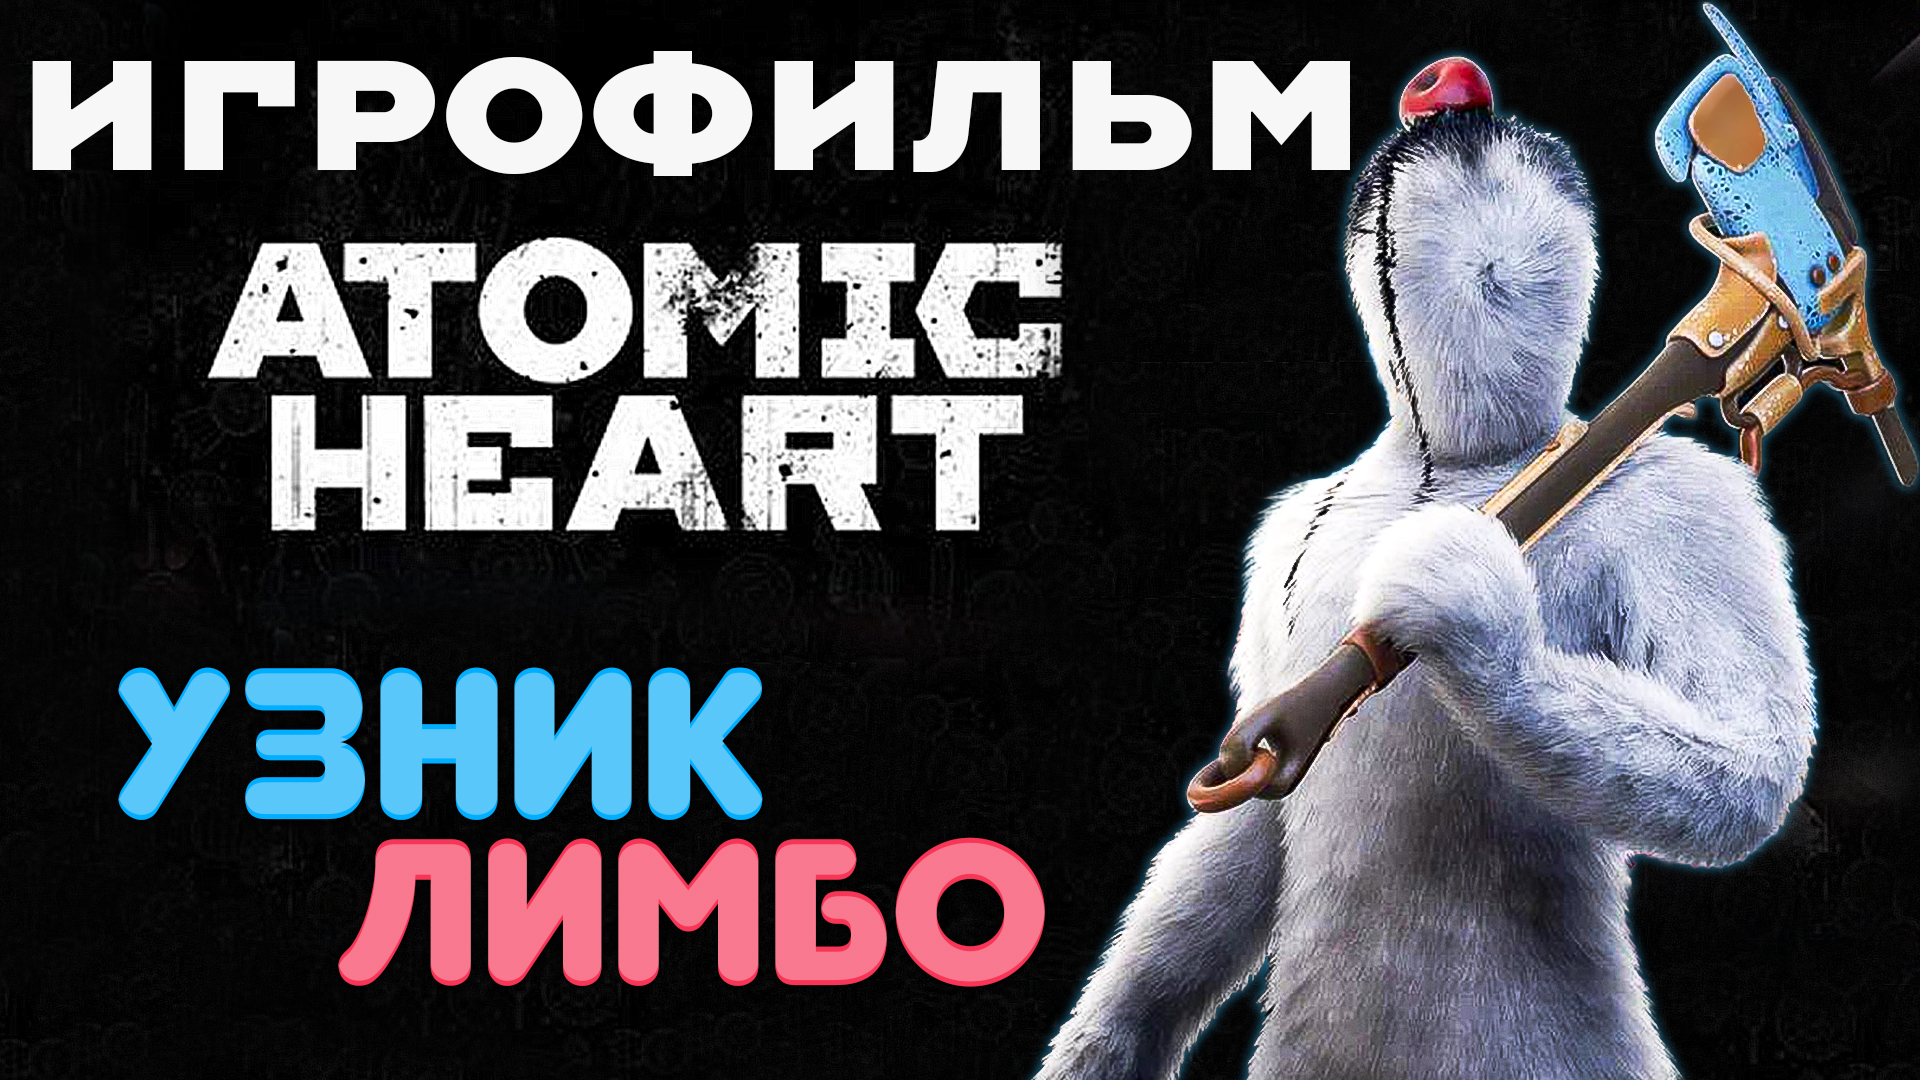 Atomic Heart: DLC 2 - Узник Лимбо ? Игрофильм ?️ PC 2K 120 fps